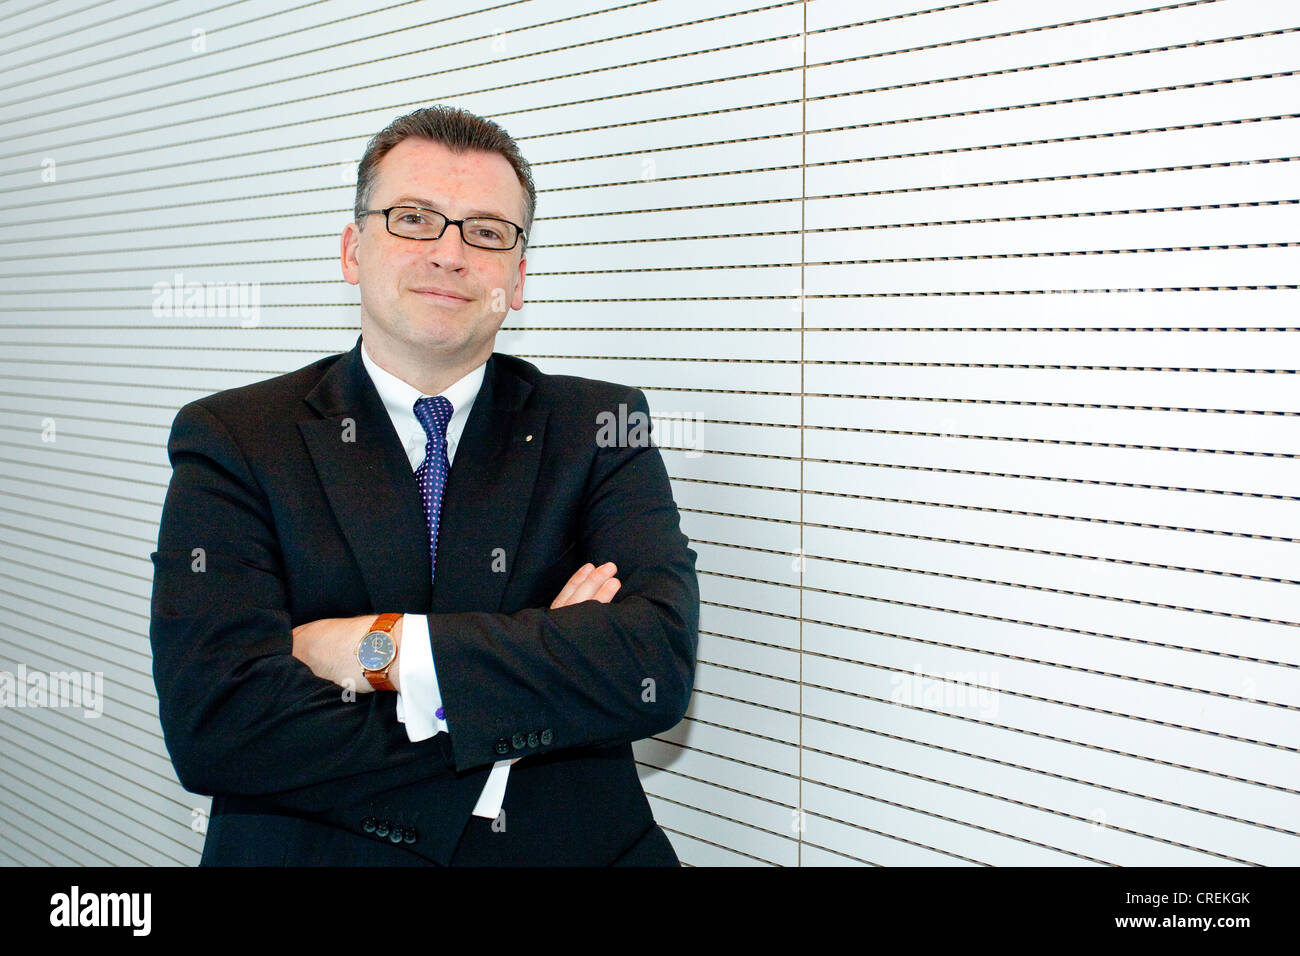 Andreas Keil, Chief Financial Officer von H + R Wasag AG, ein  Spezialchemie-Konzern, die entwickelt und produziert Stockfotografie - Alamy